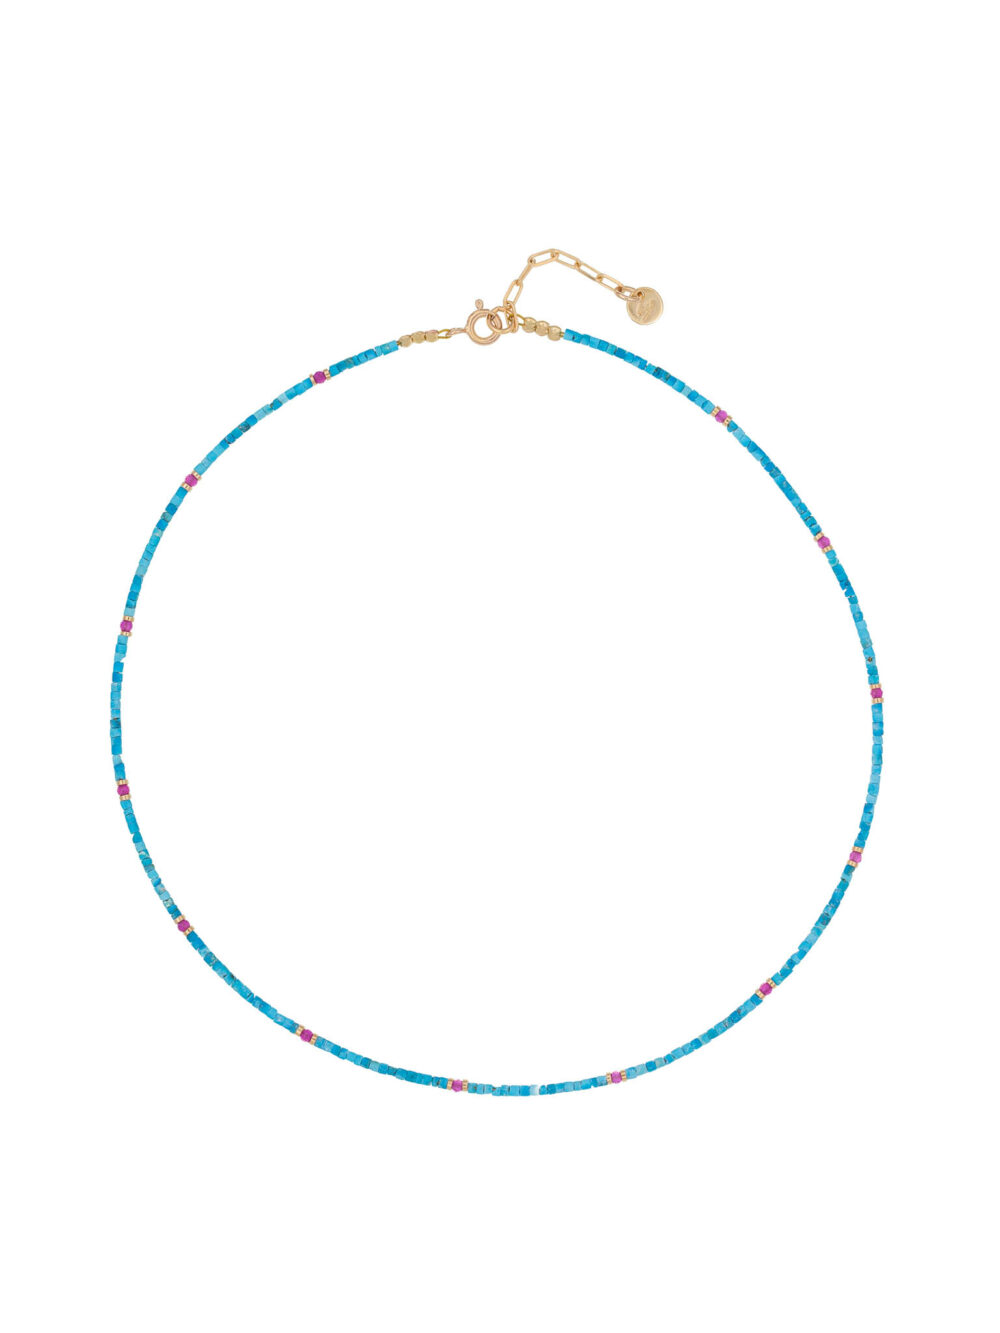 elise-turquoise-and-rubylite-necklaceelise-turquoise-and-rubylite-necklace